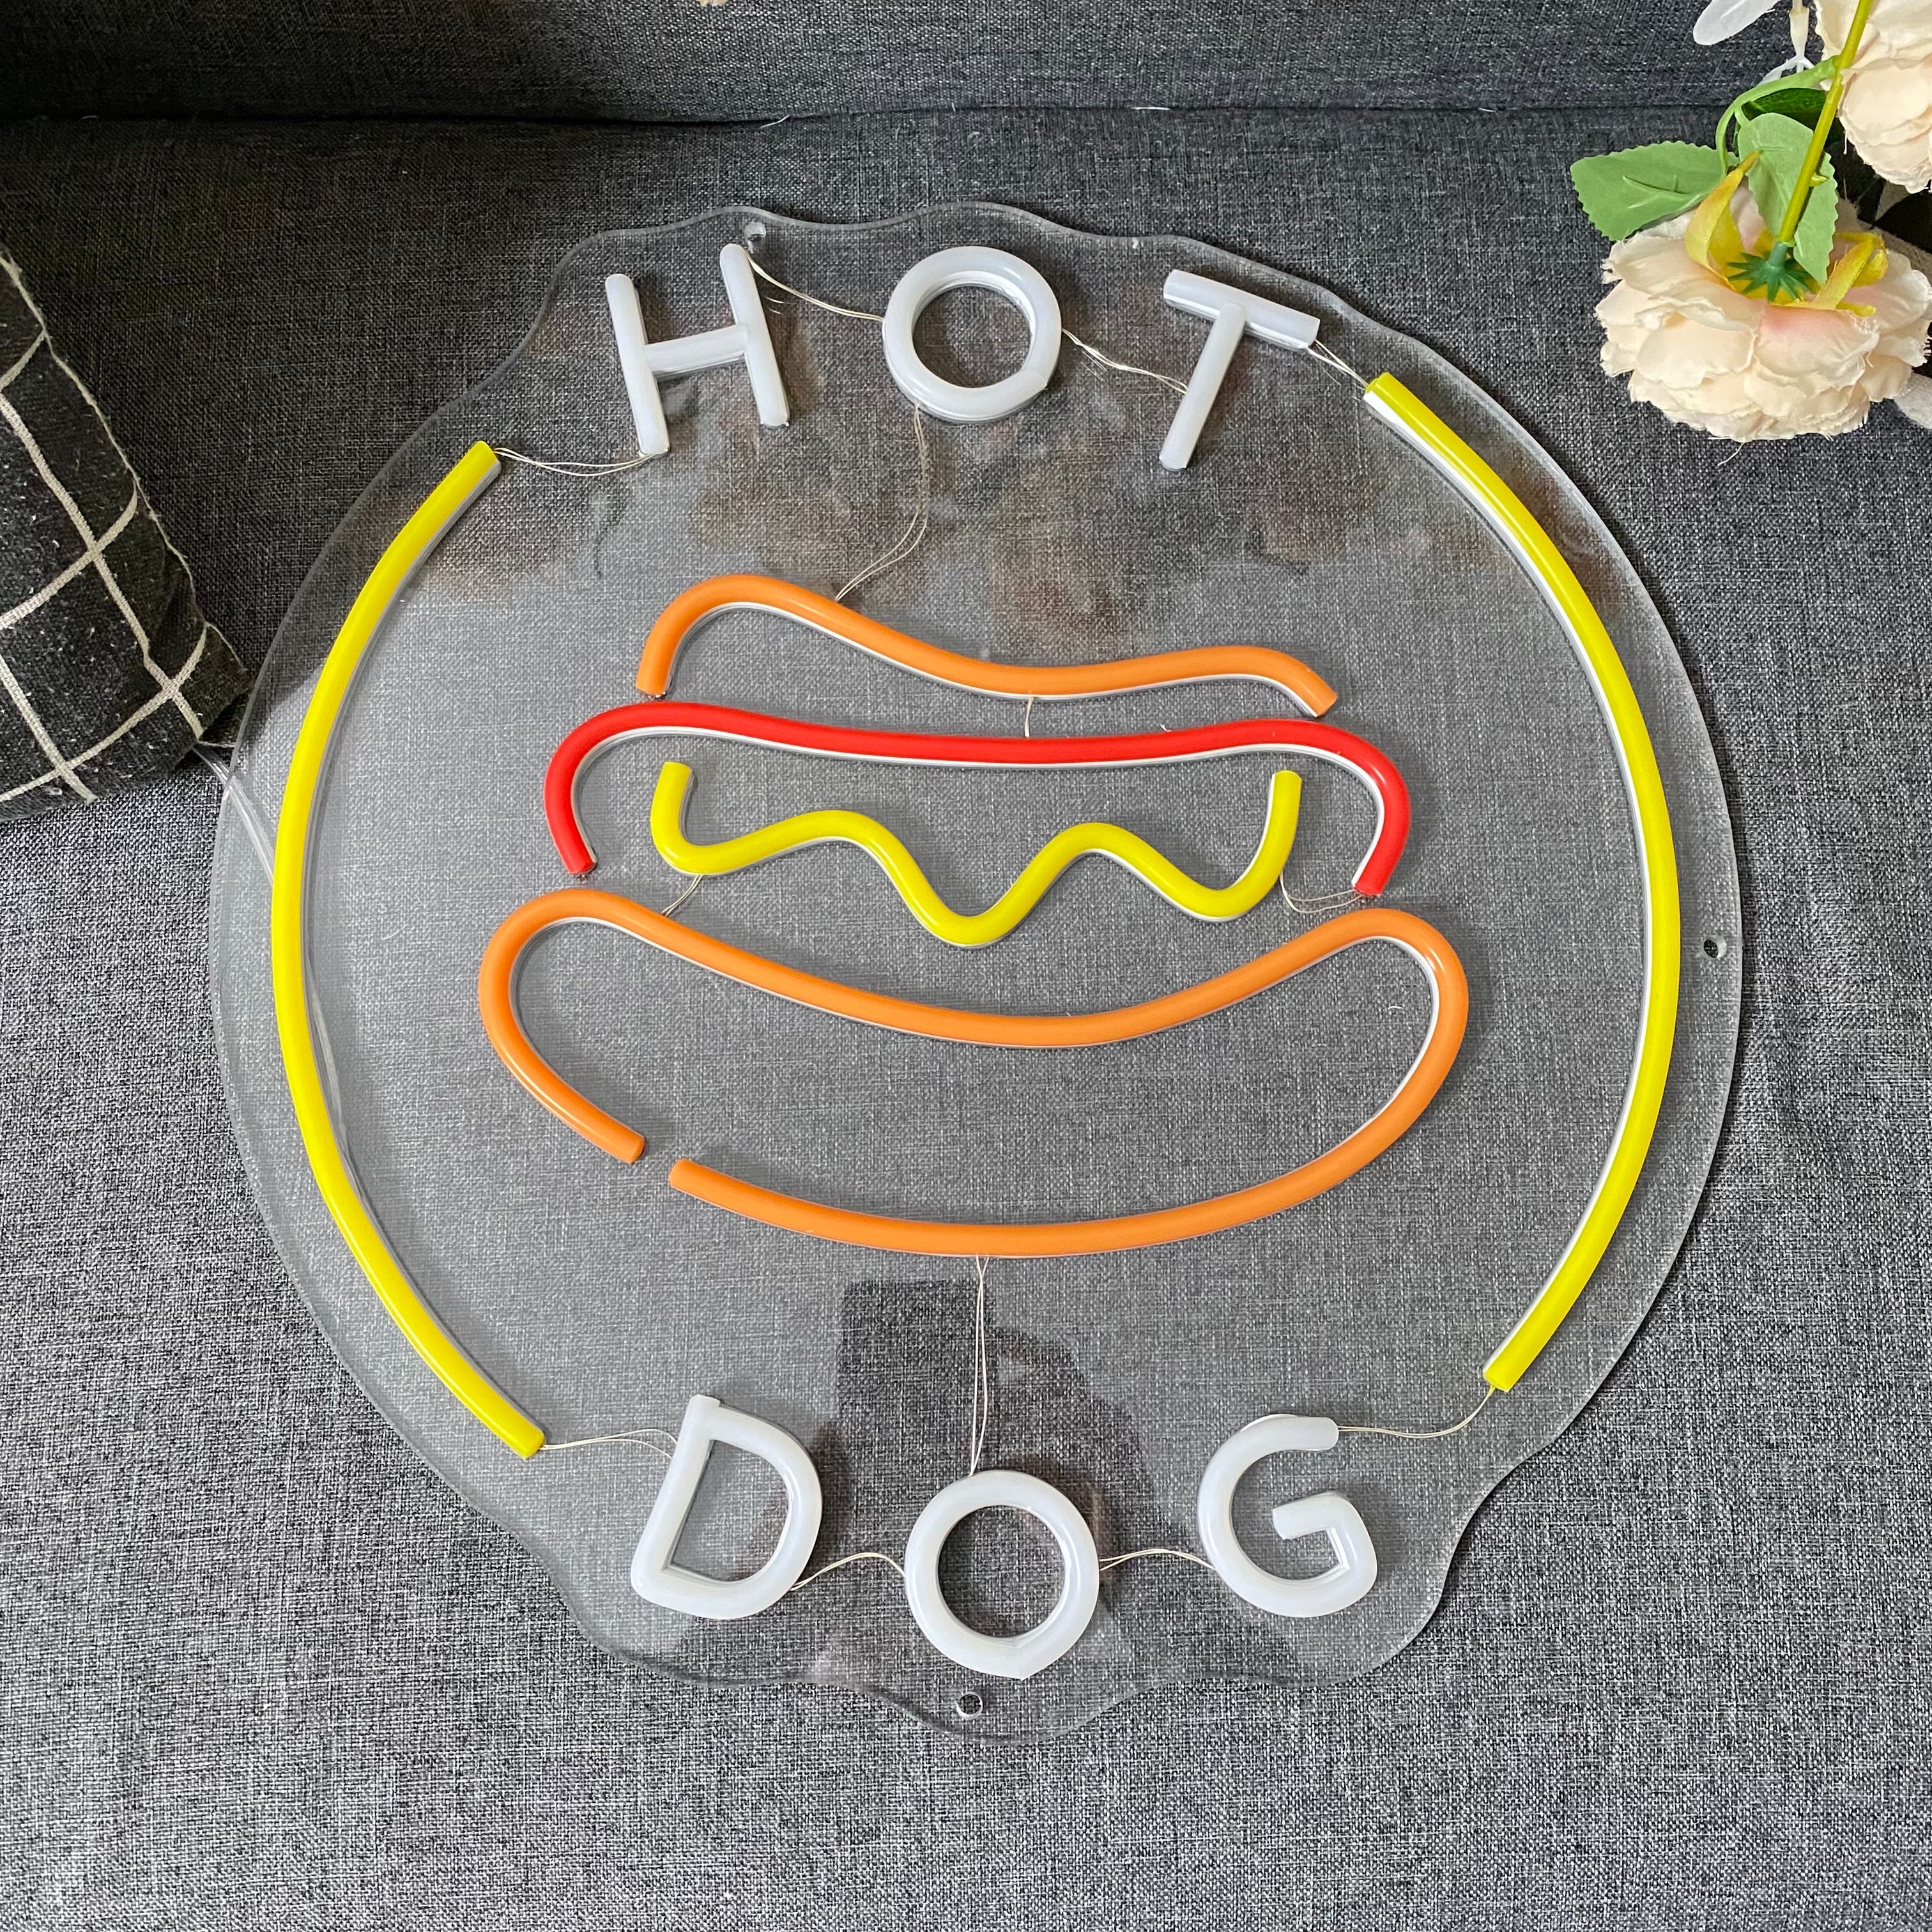 Hot Dog Neon Light Decoration For Resturant Burger Shop Fast Food Shop